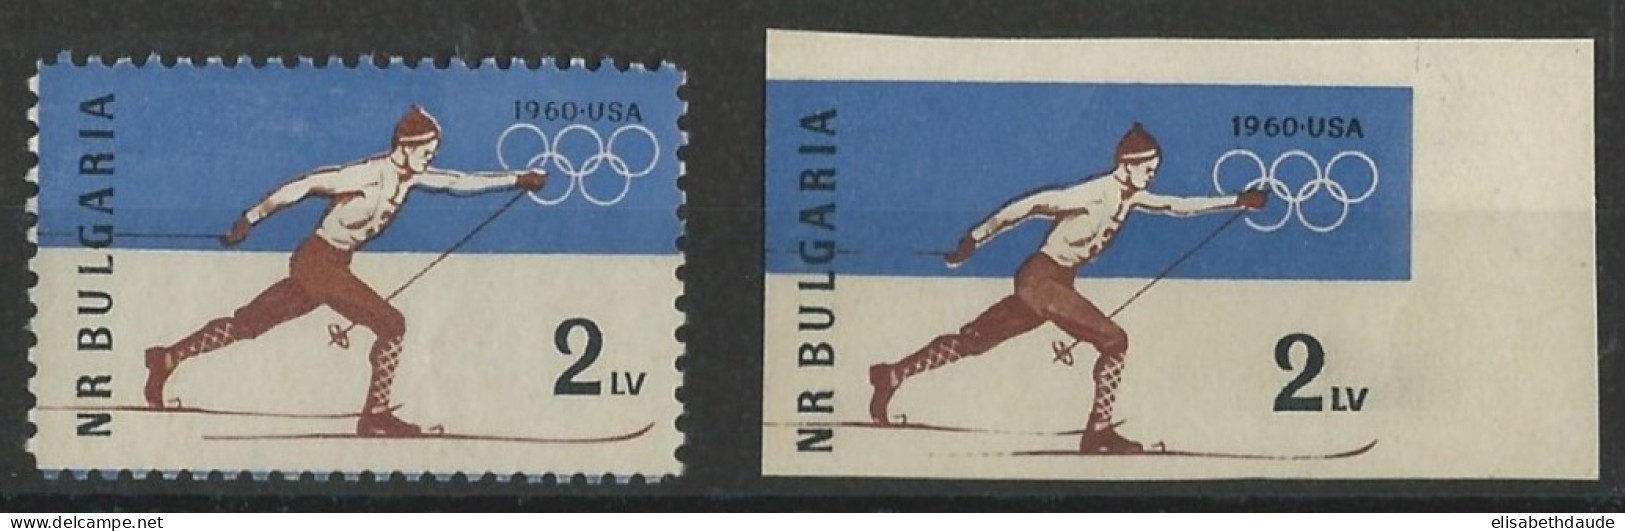 BULGARIE - 1960 - YVERT N°1006 + 1006a DENTELE + NON DENTELE ** MNH - Ongebruikt